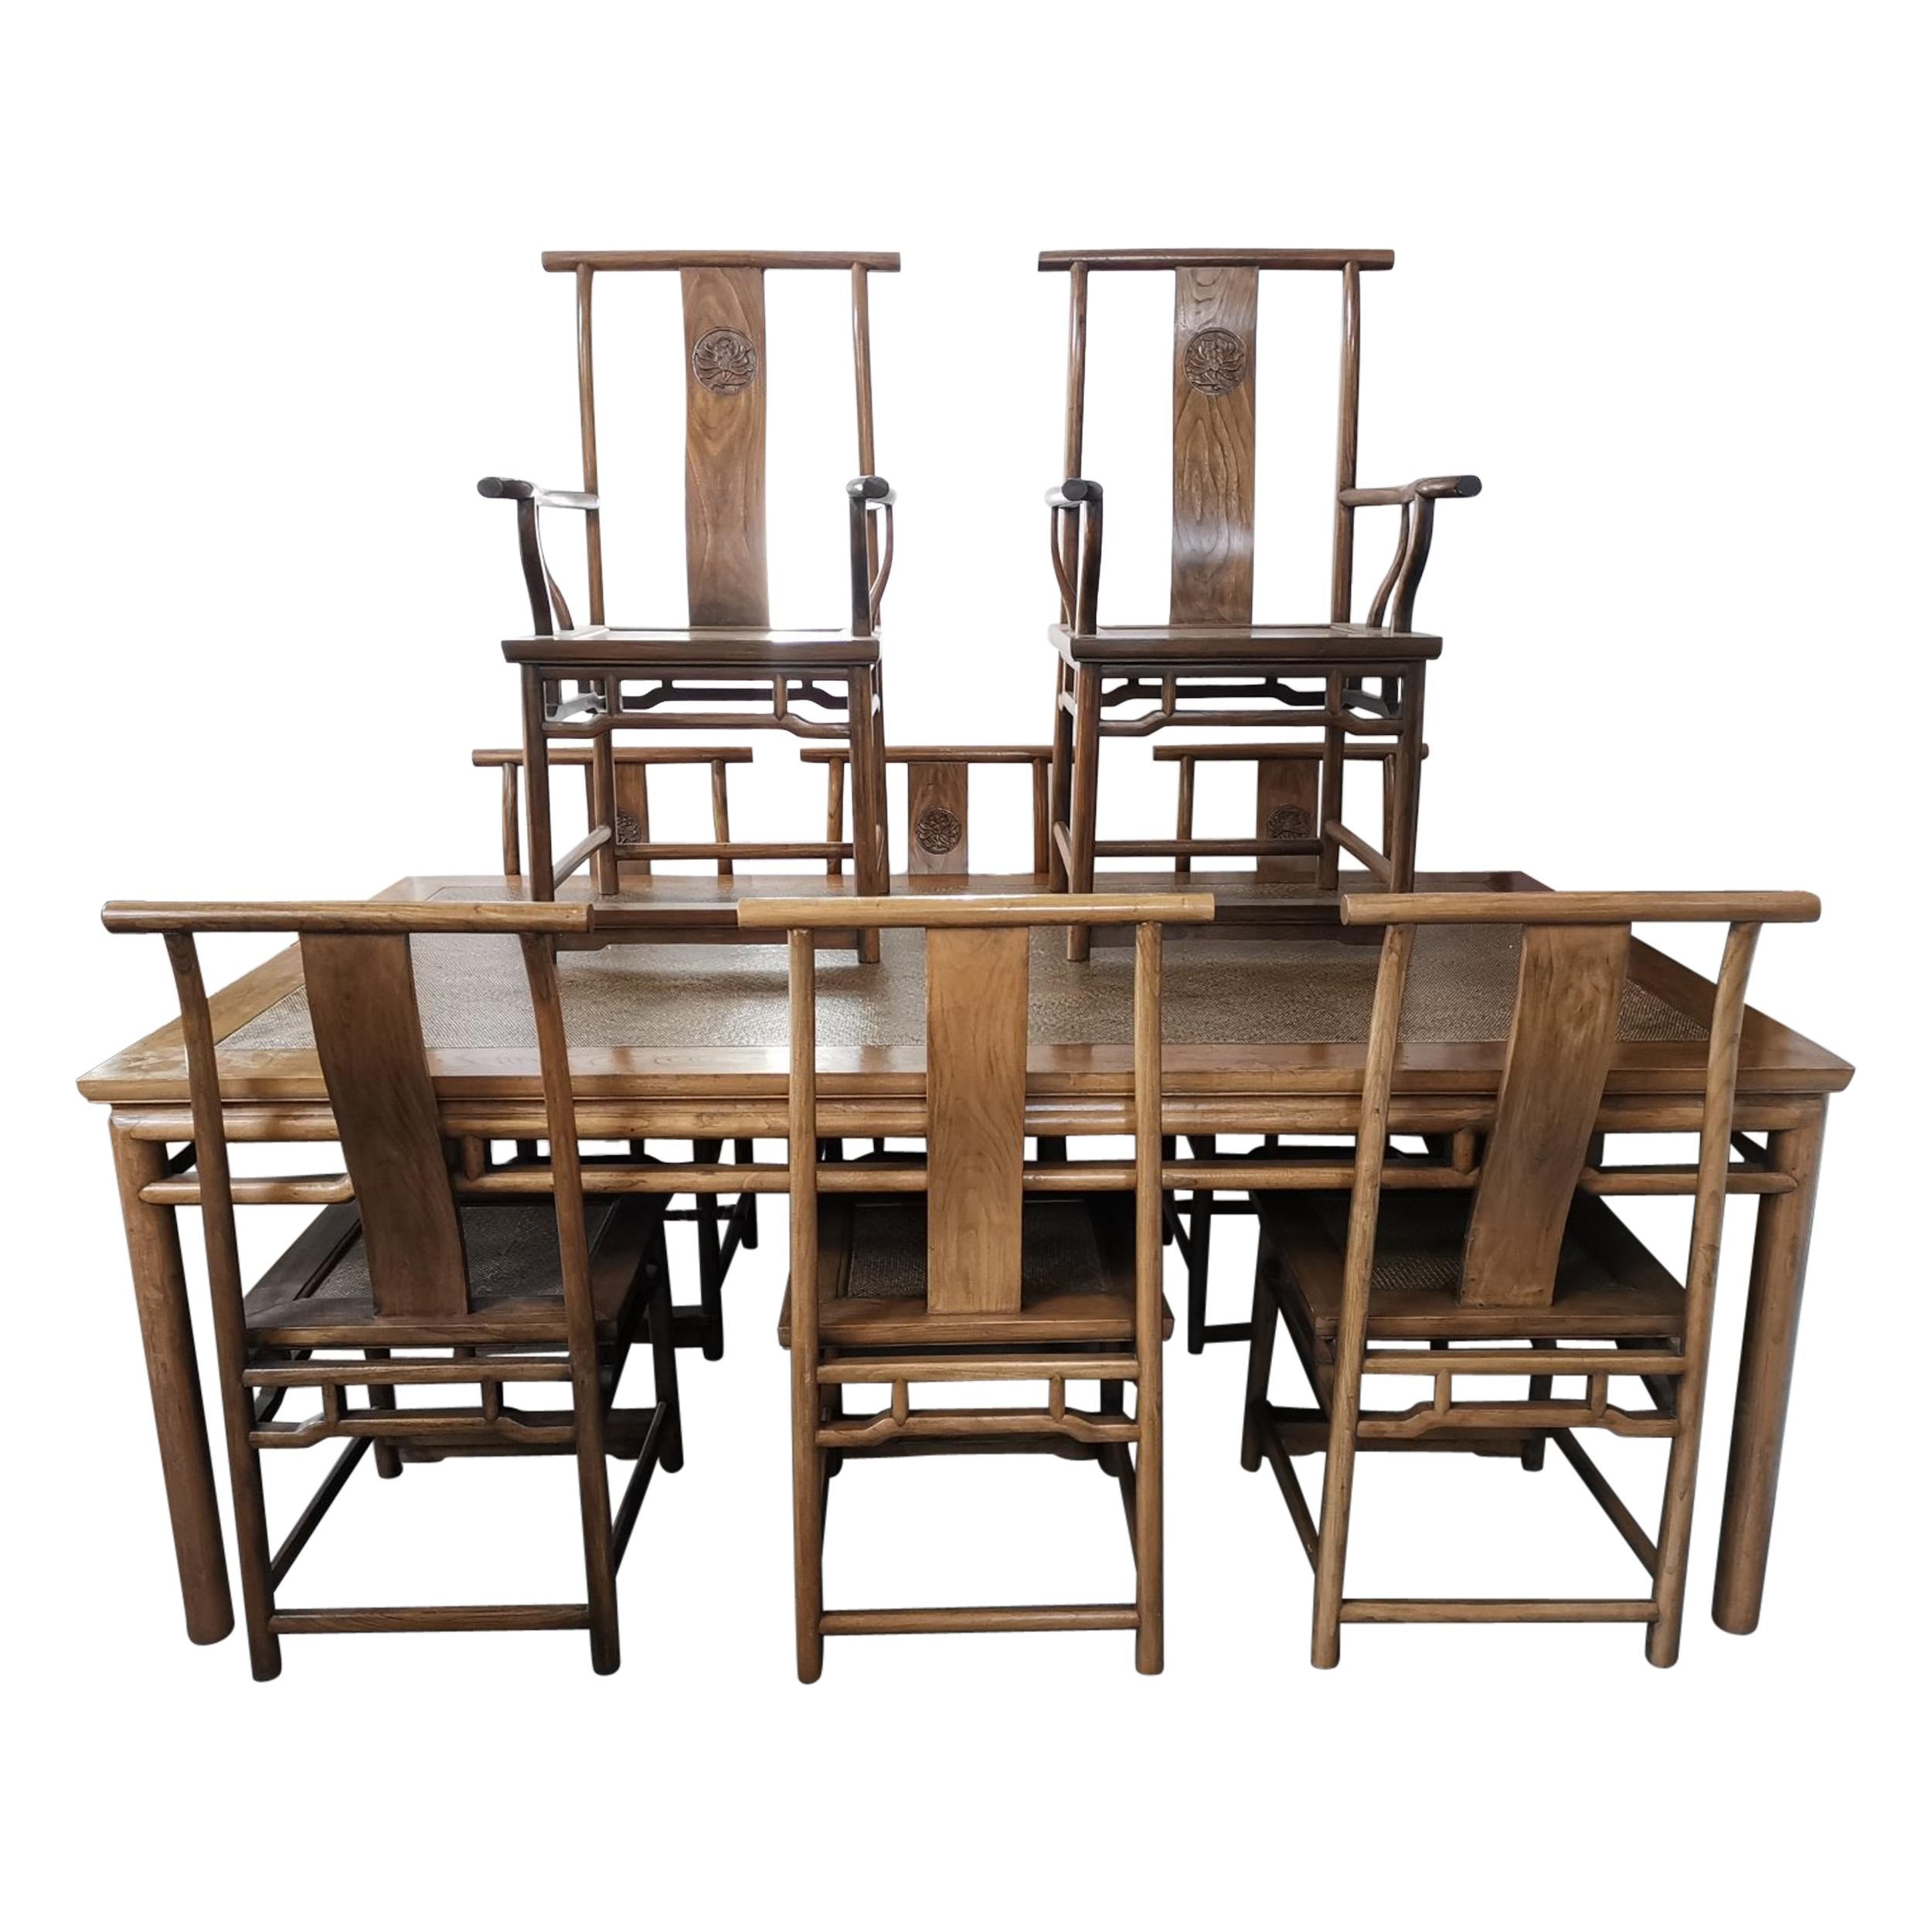 Table de salle à manger chinoise en bois dur et huit chaises assorties avec sculpture stylisée